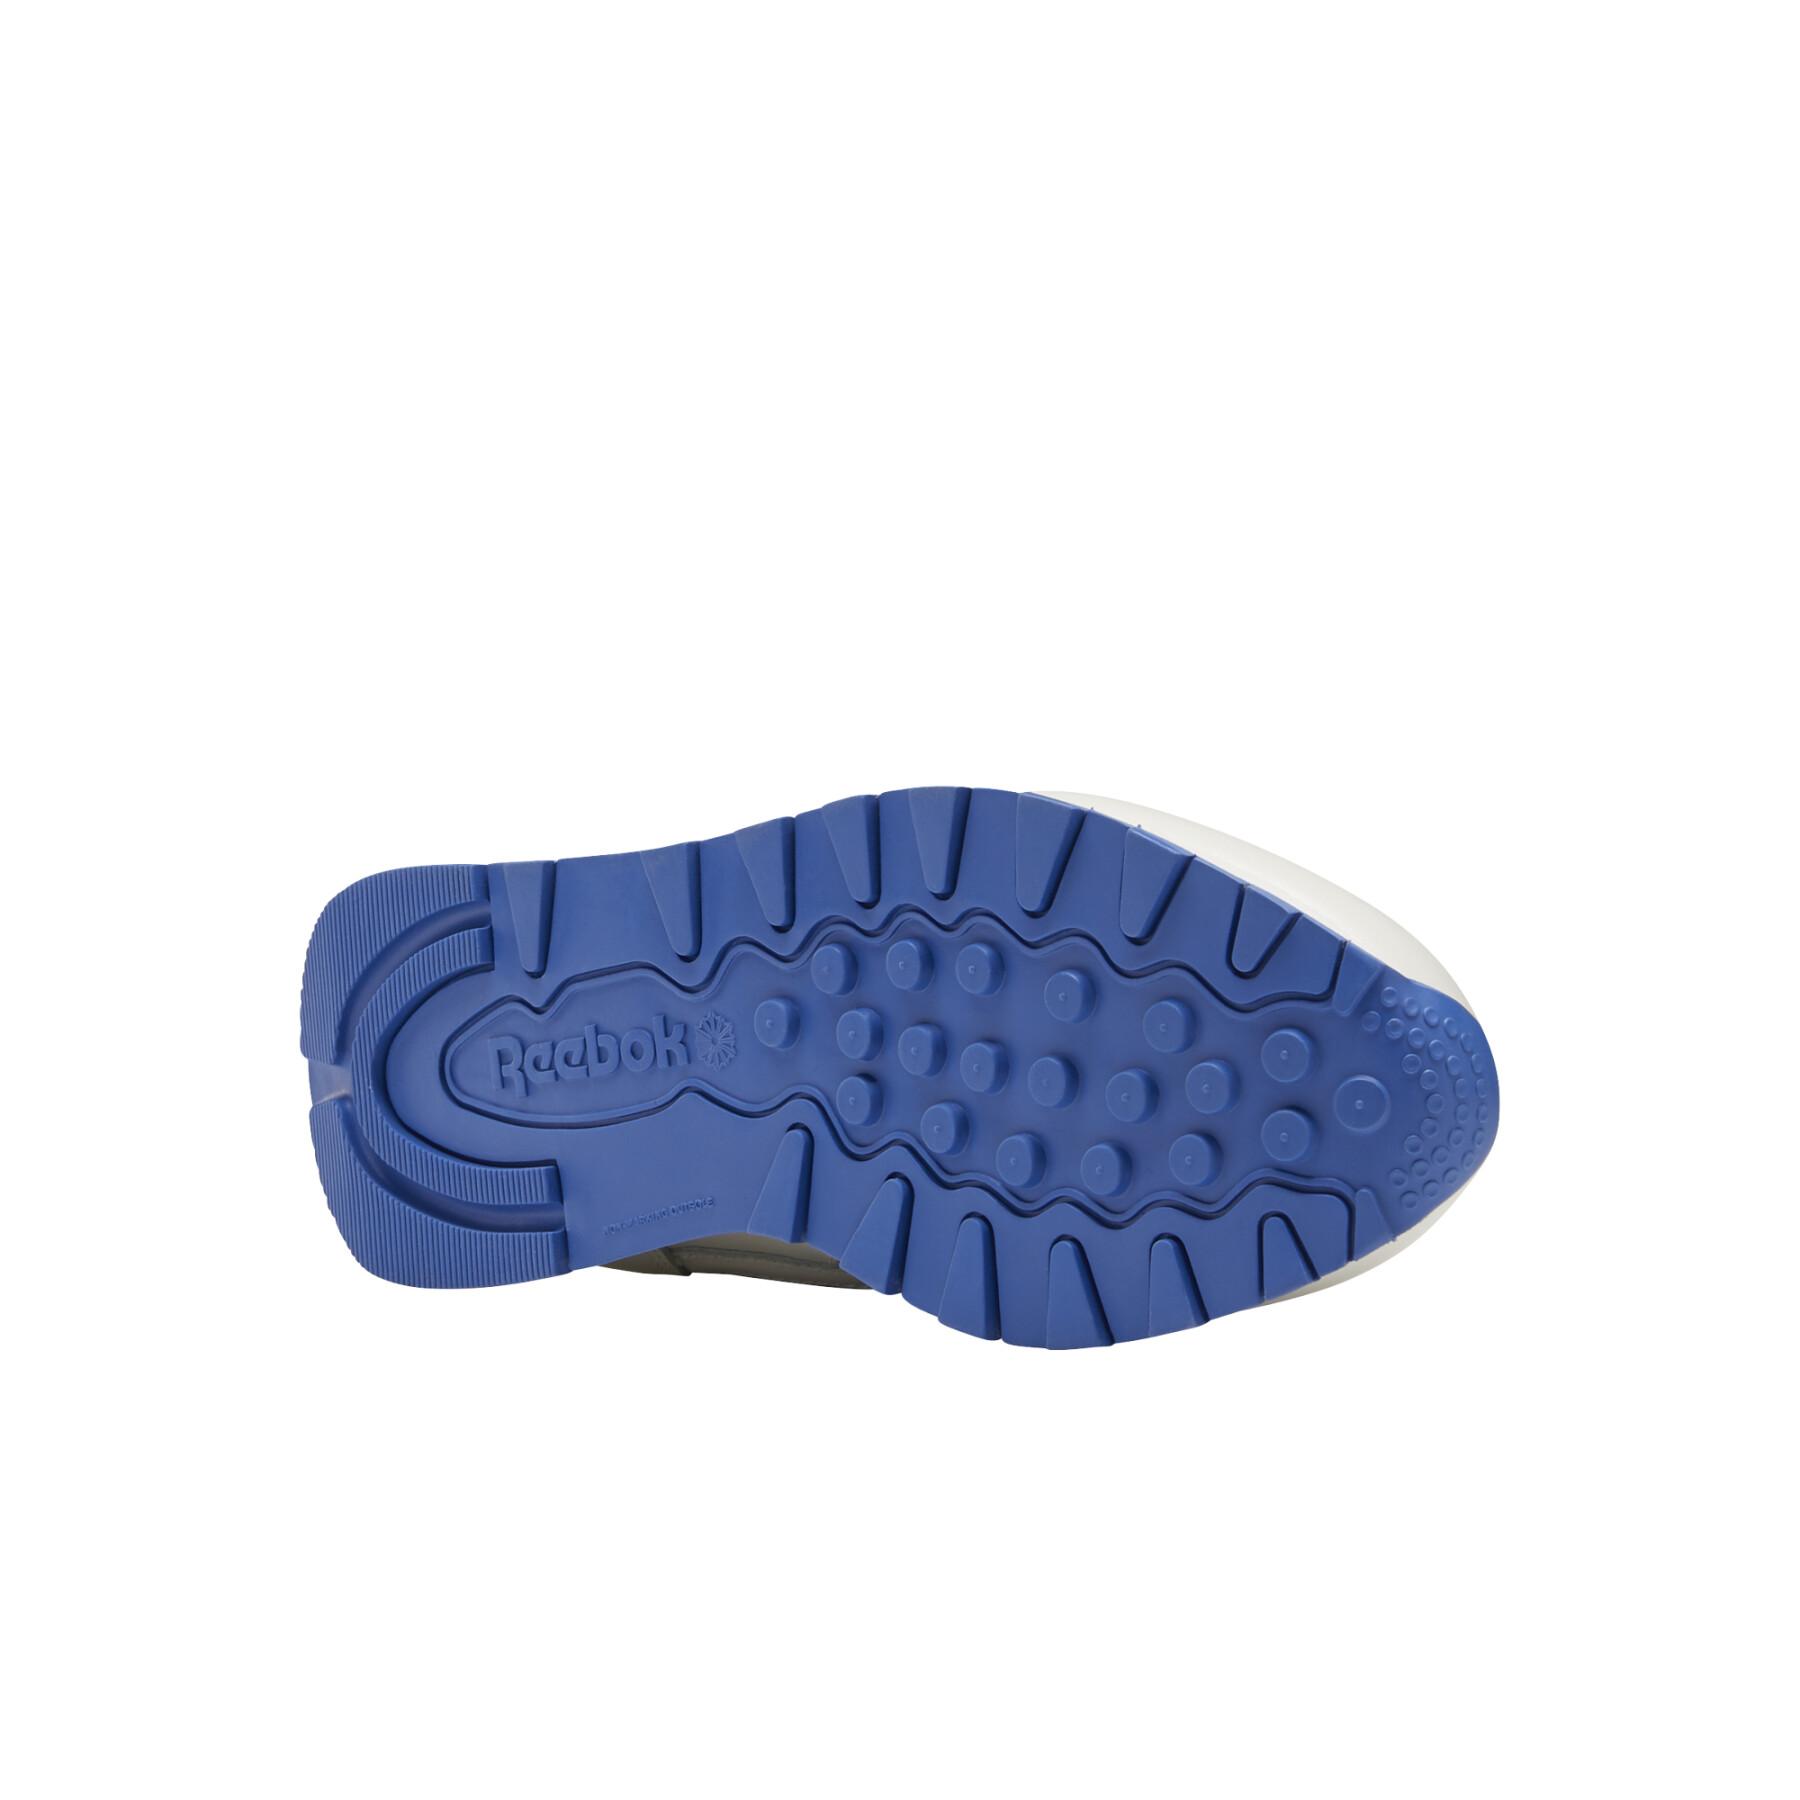 Zapatillas de deporte para mujeres Reebok Leather Mark